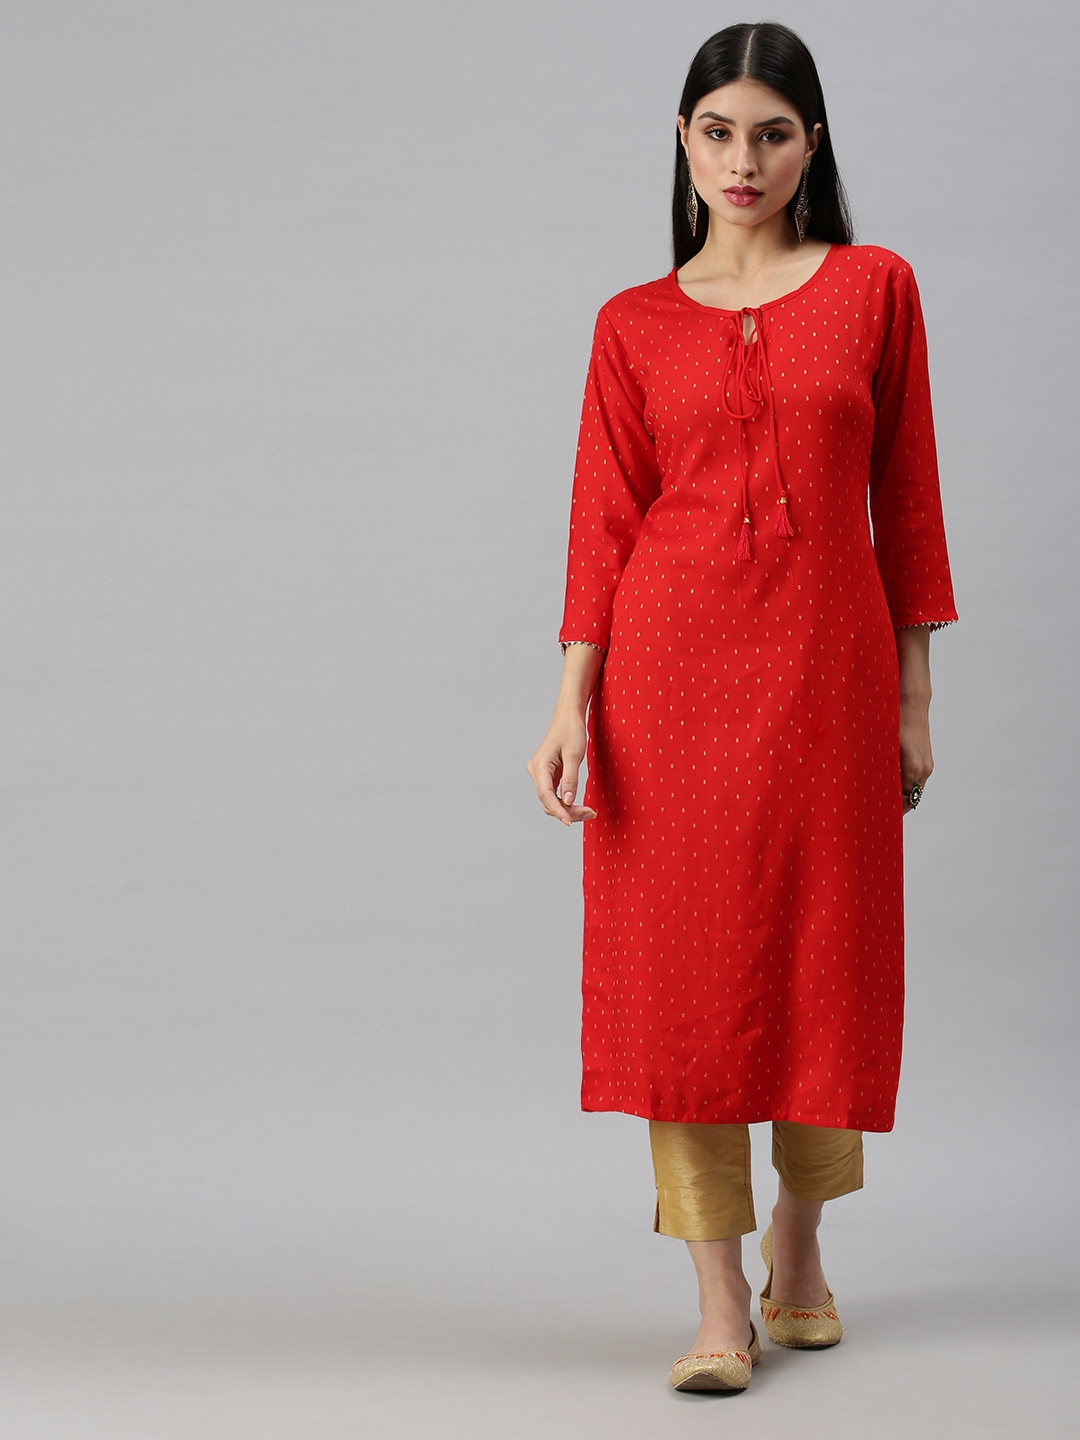 Women's Red Cotton Blend Printed Regular Kurtas